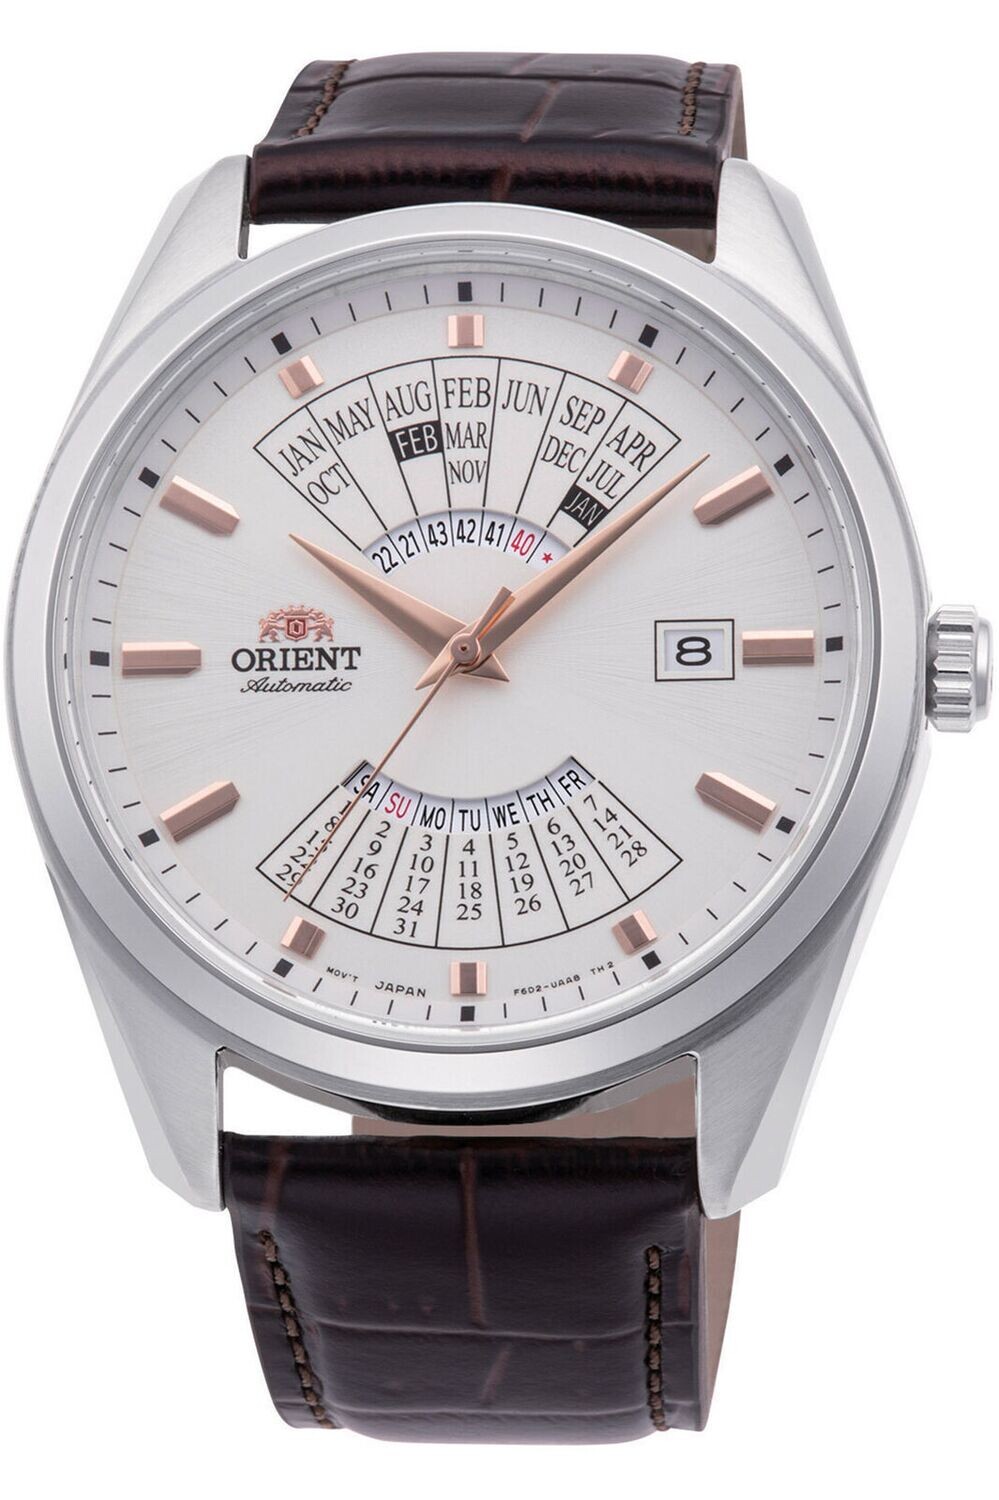 Reloj automático hombre Orient Multi Year Calendar RA-BA0005S dial blanco 43.5mm correa de cuero 50m (admite cuerda manual)